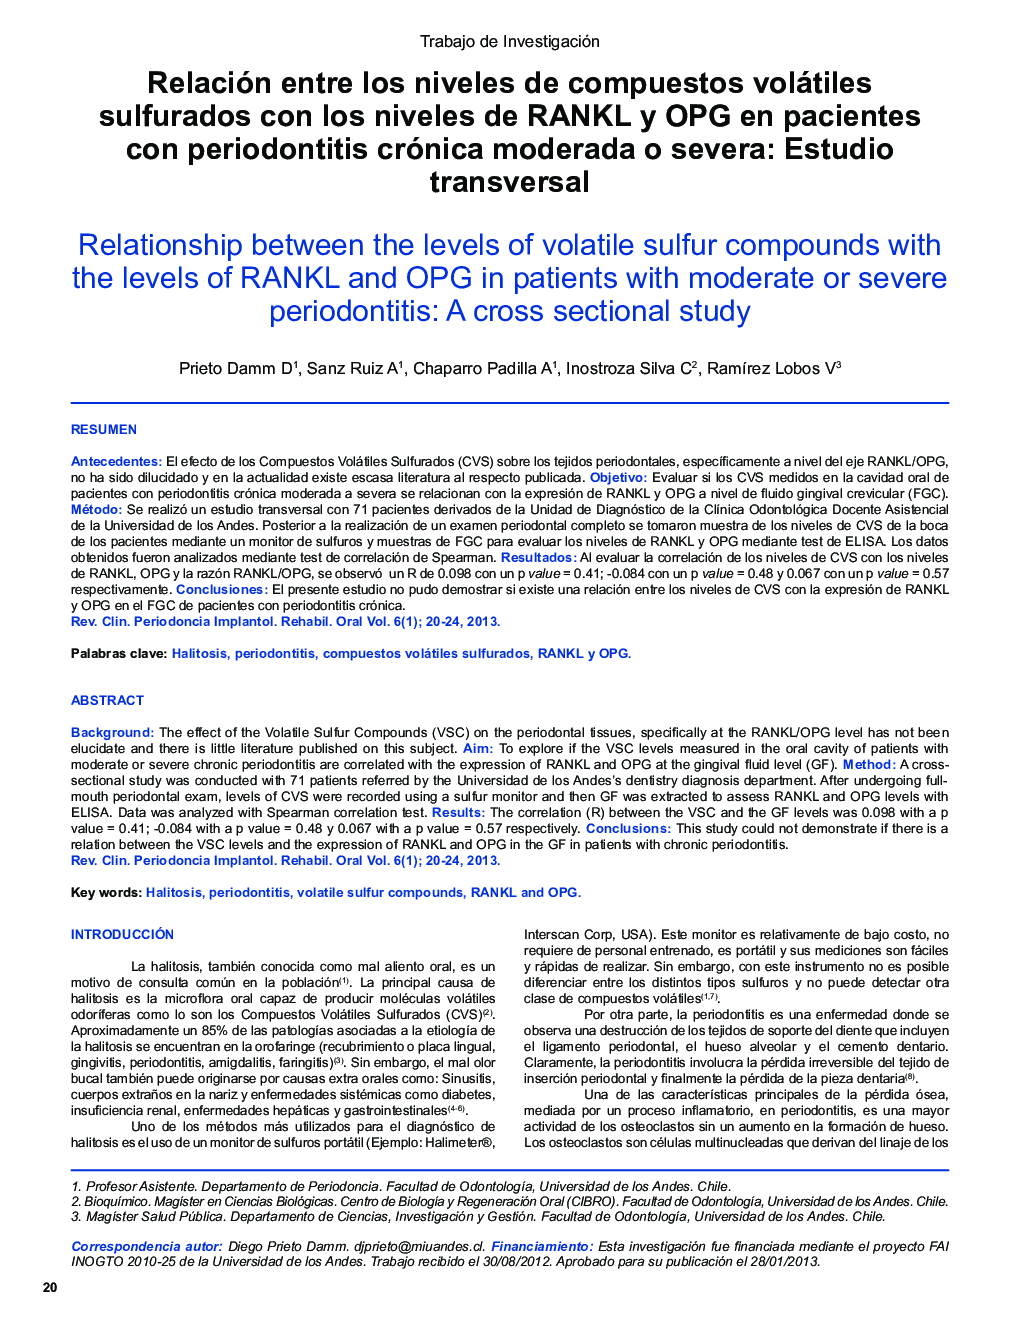 Relación entre los niveles de compuestos volátiles sulfurados con los niveles de RANKL y OPG en pacientes con periodontitis crónica moderada o severa: Estudio transversal